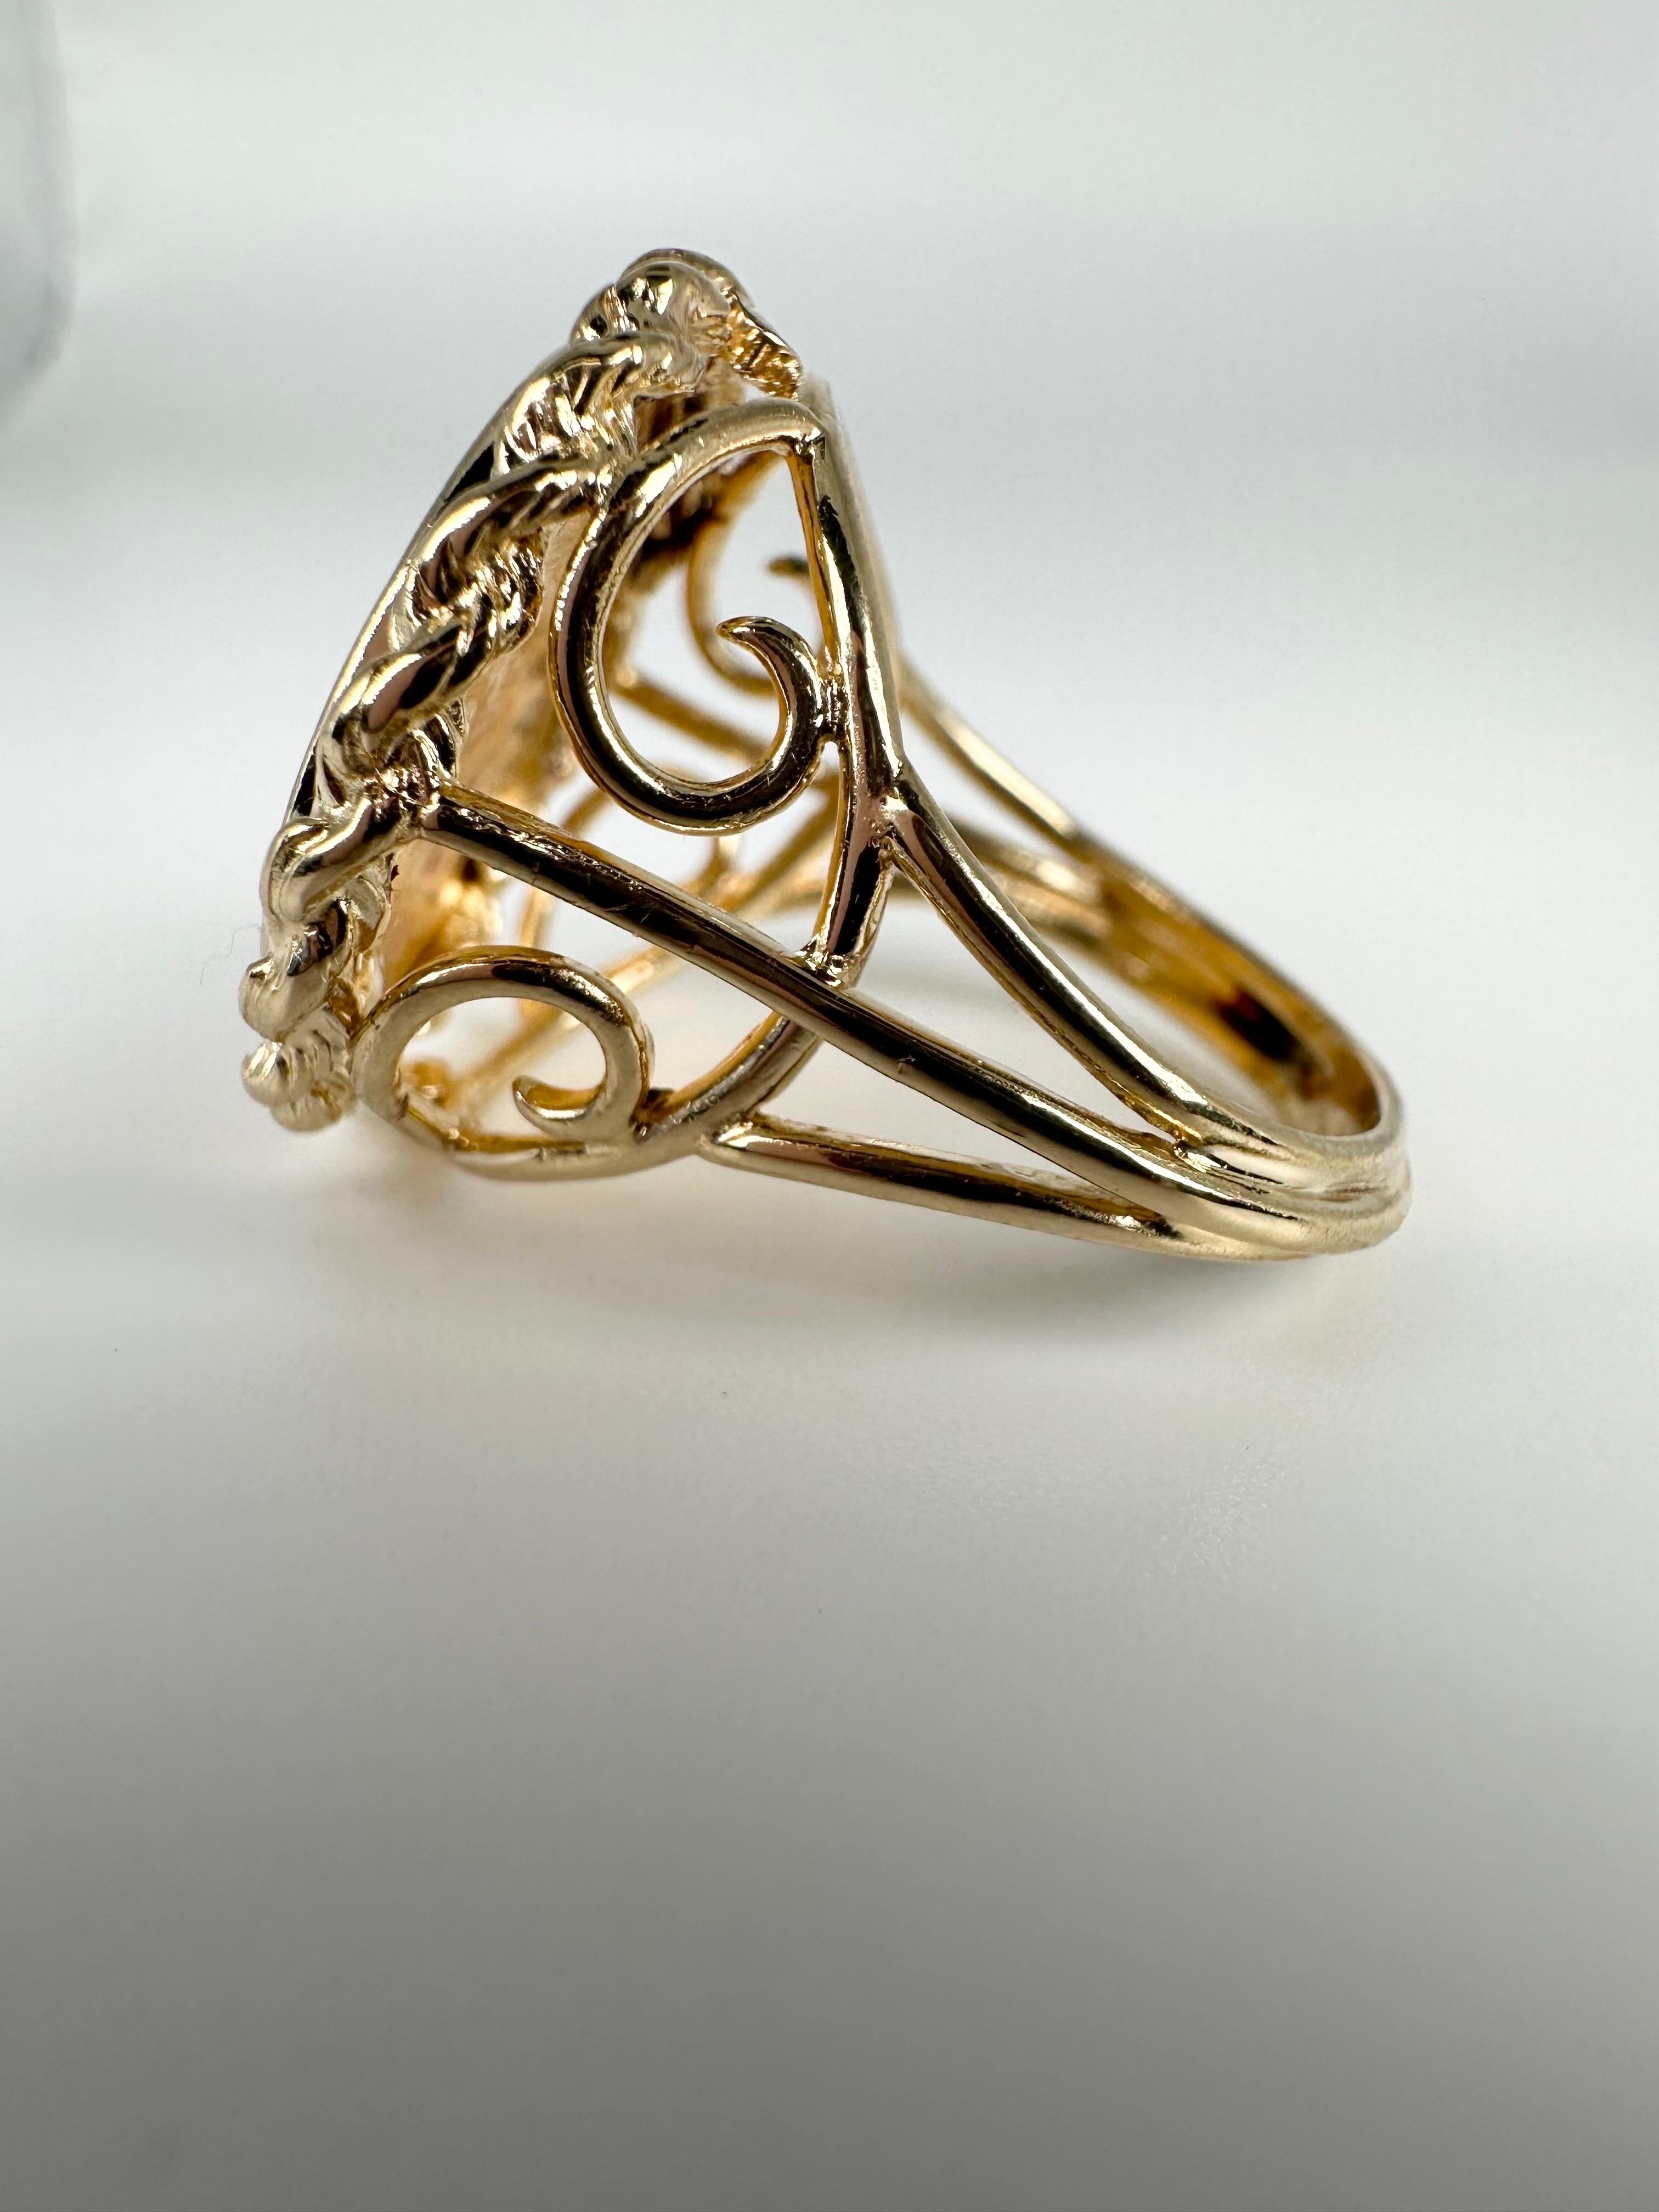 5 Dollar Freiheitsmünze Ring in 14KT Gelbgold.

GOLD: 14KT Gold

Gramm:9.52
Größe: 7
Artikel Nr.: 410-00016EET

WAS SIE BEI STAMPAR JEWELERS BEKOMMEN:
Stampar Jewelers, im Herzen von Jupiter, Florida, ist ein Juweliergeschäft und Studio, das sich